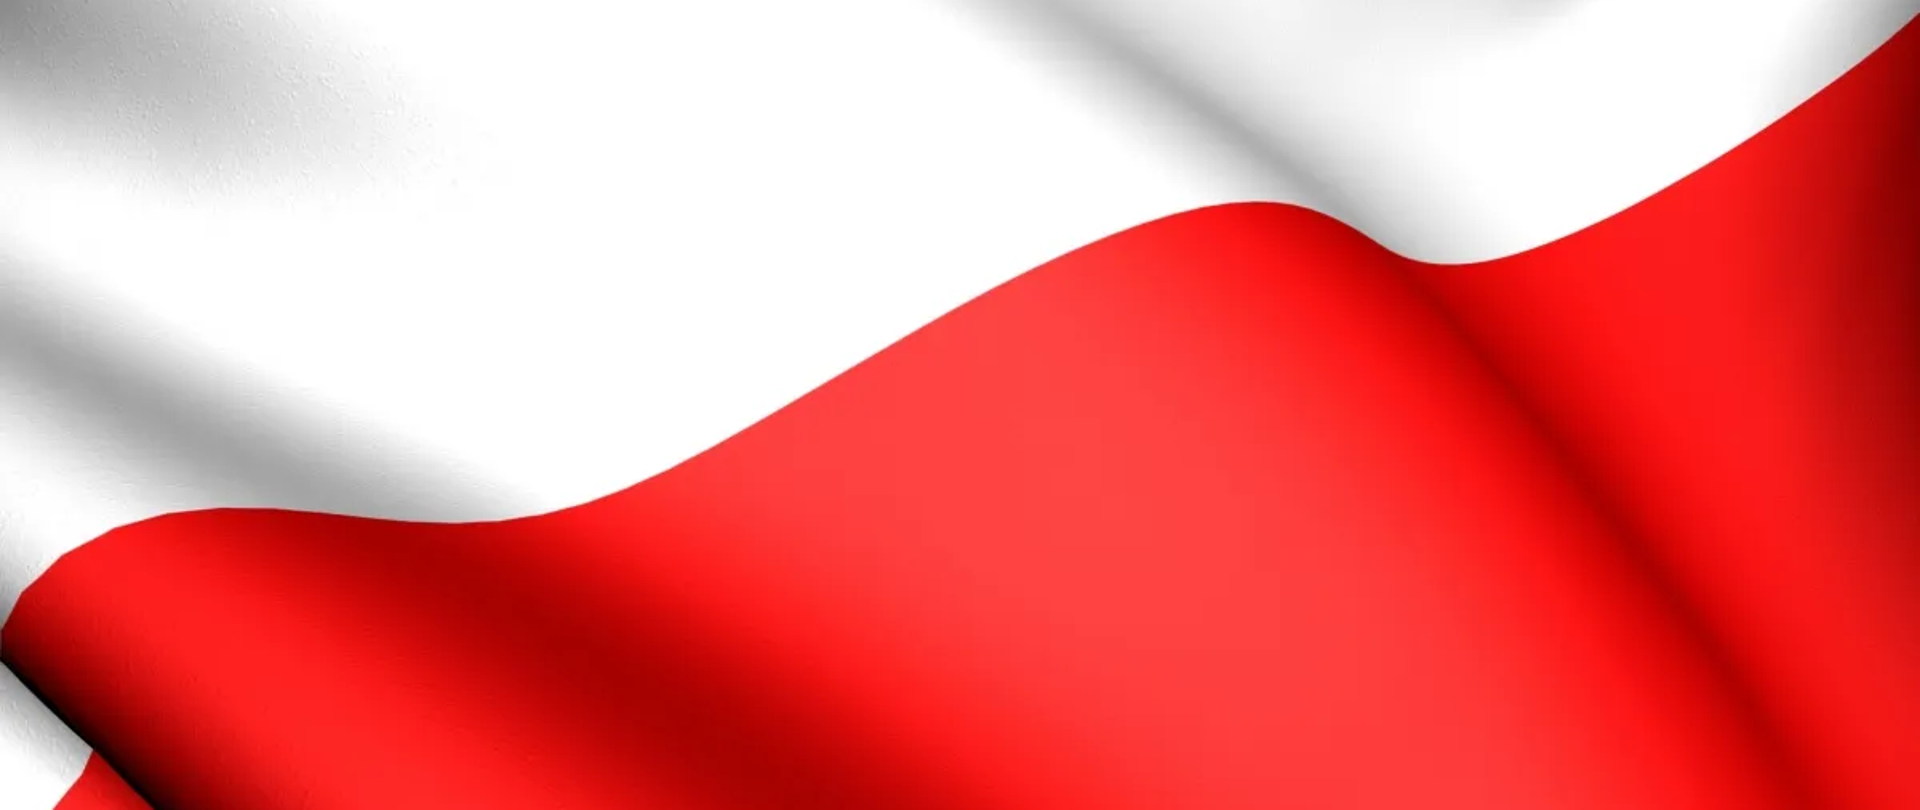 Falująca flaga Polski (biało czerwona)